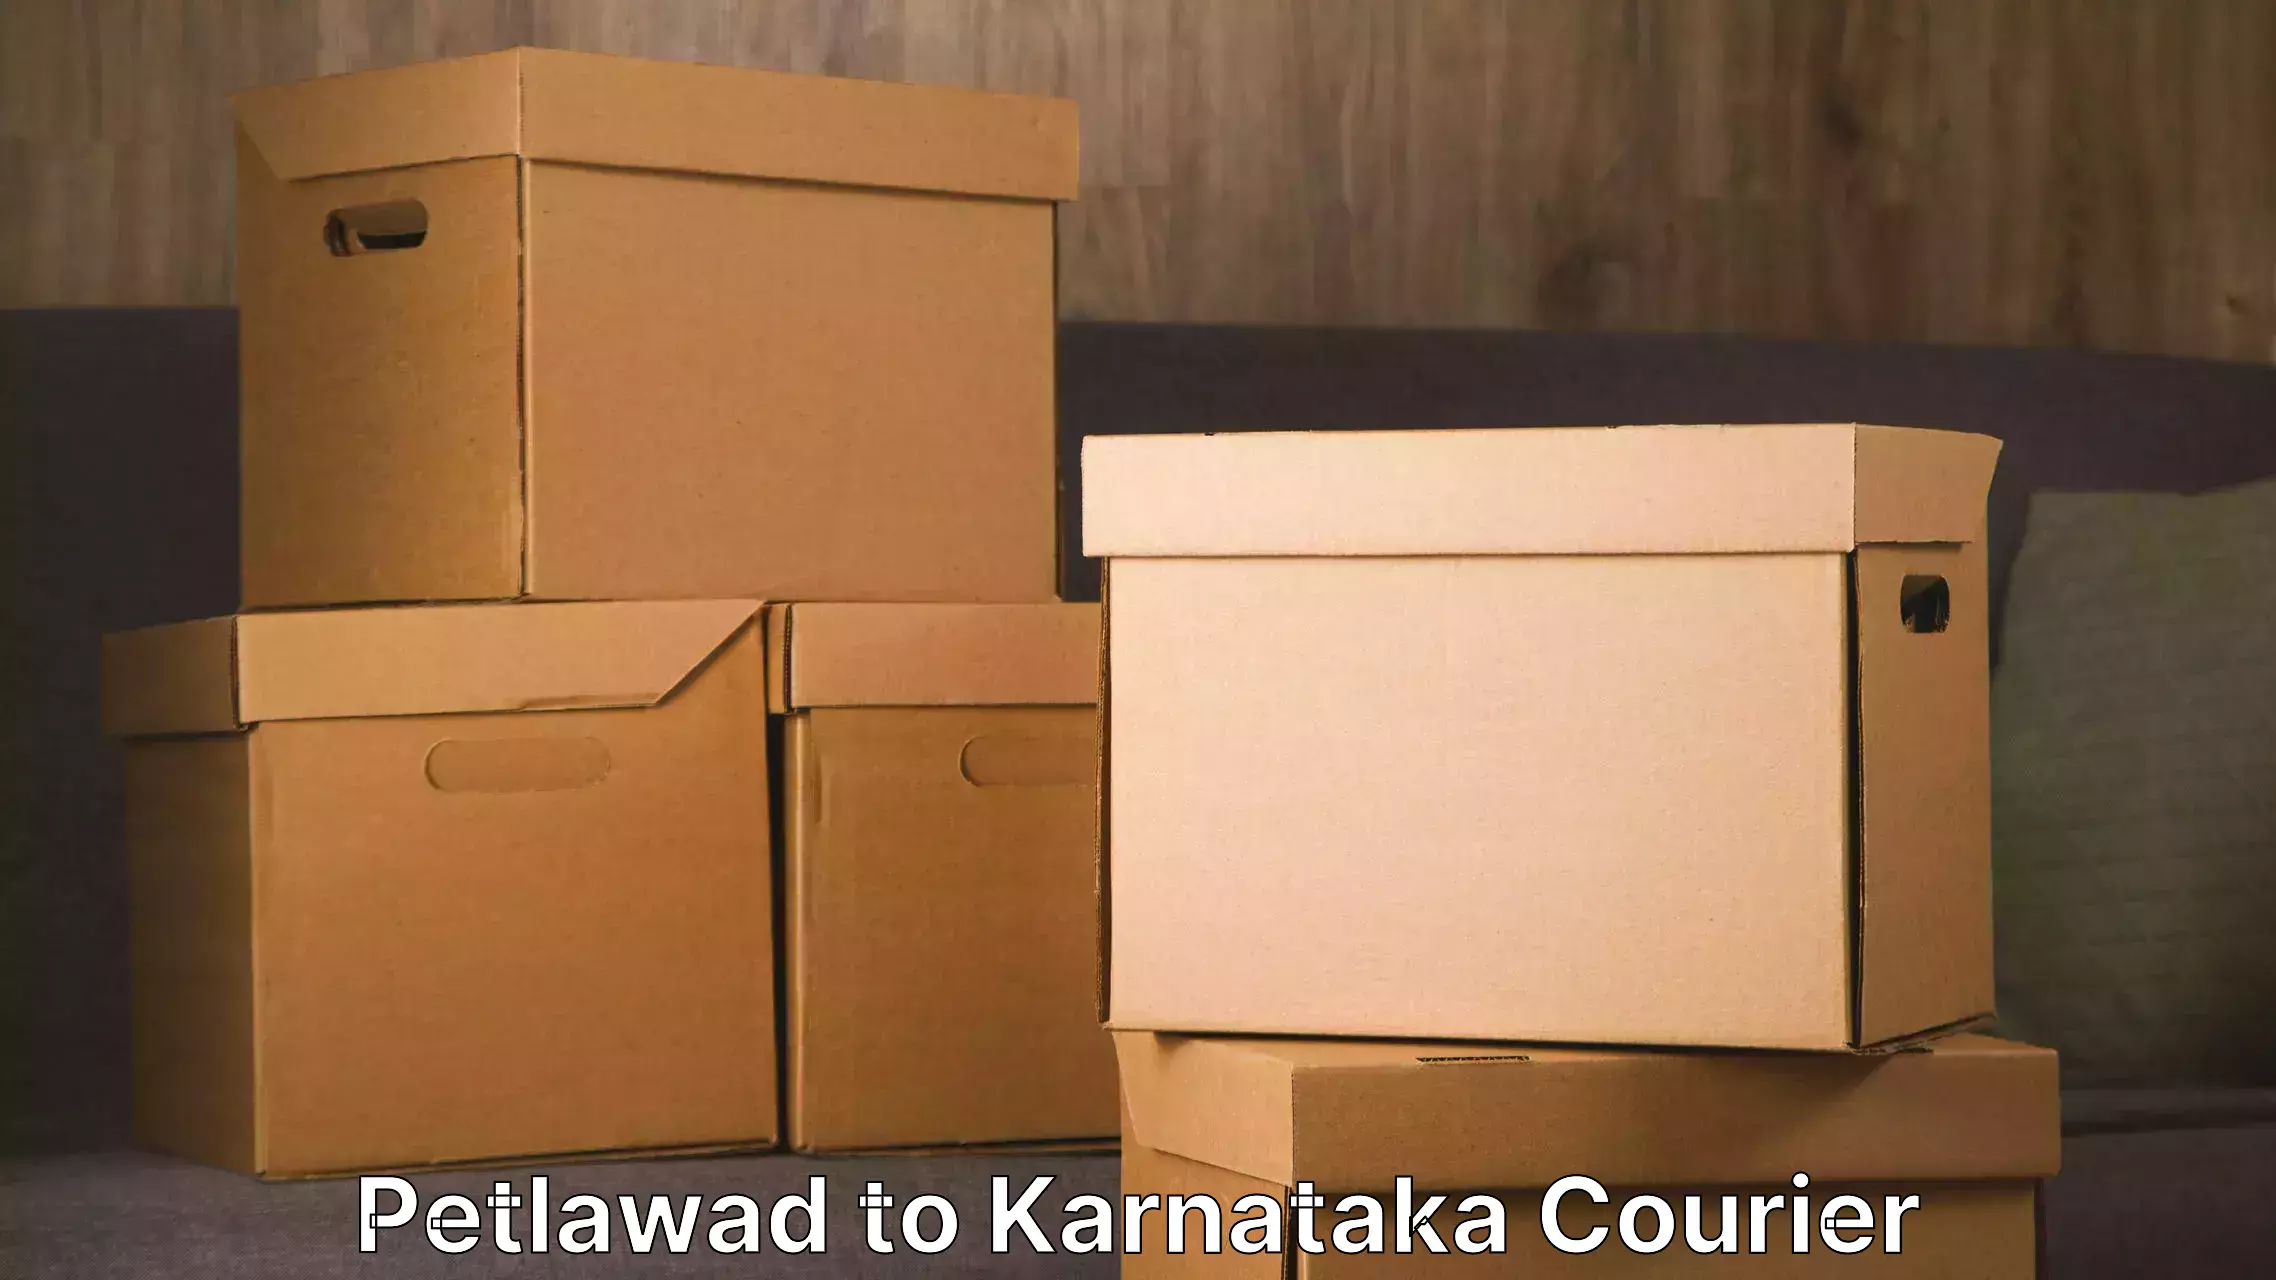 Furniture transport solutions Petlawad to Karnataka